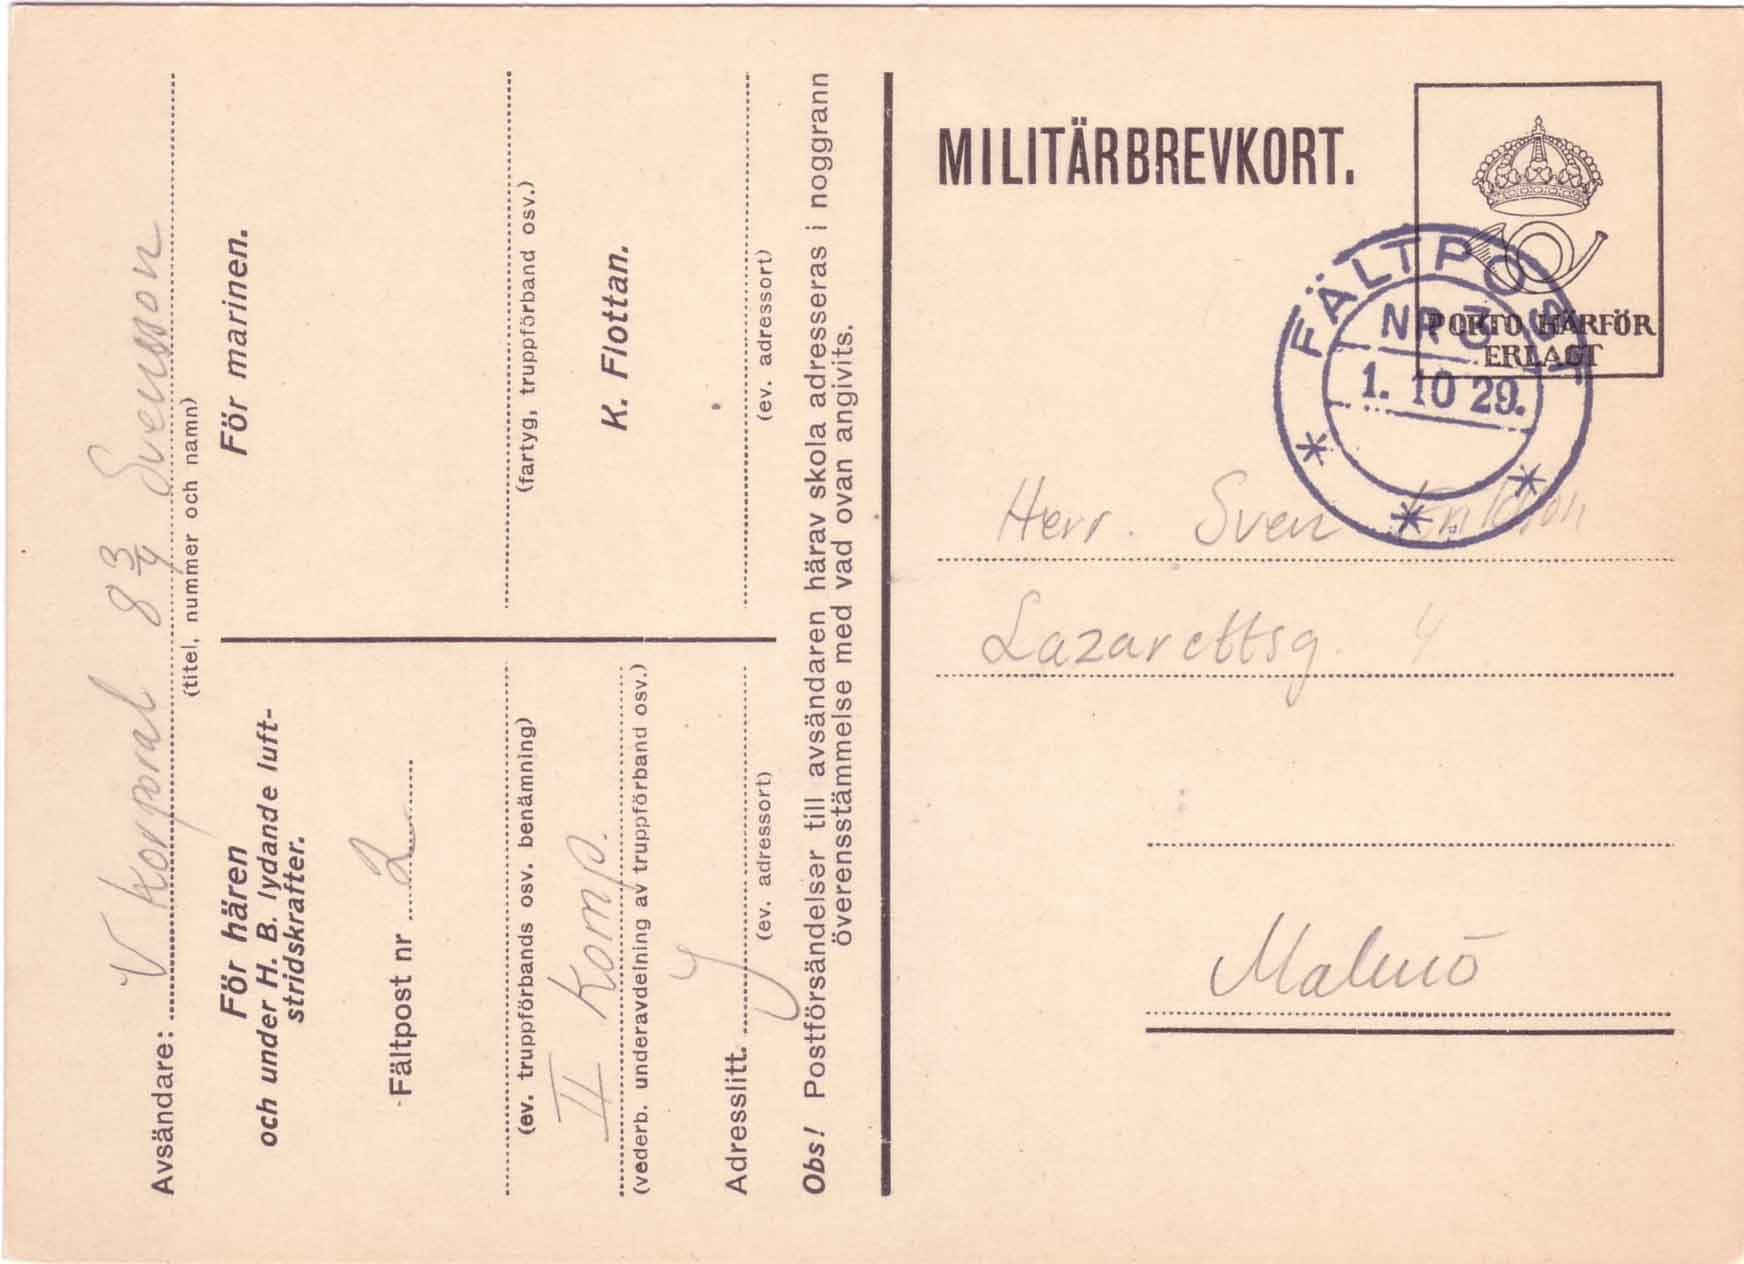 Militärbrevkort från 1929